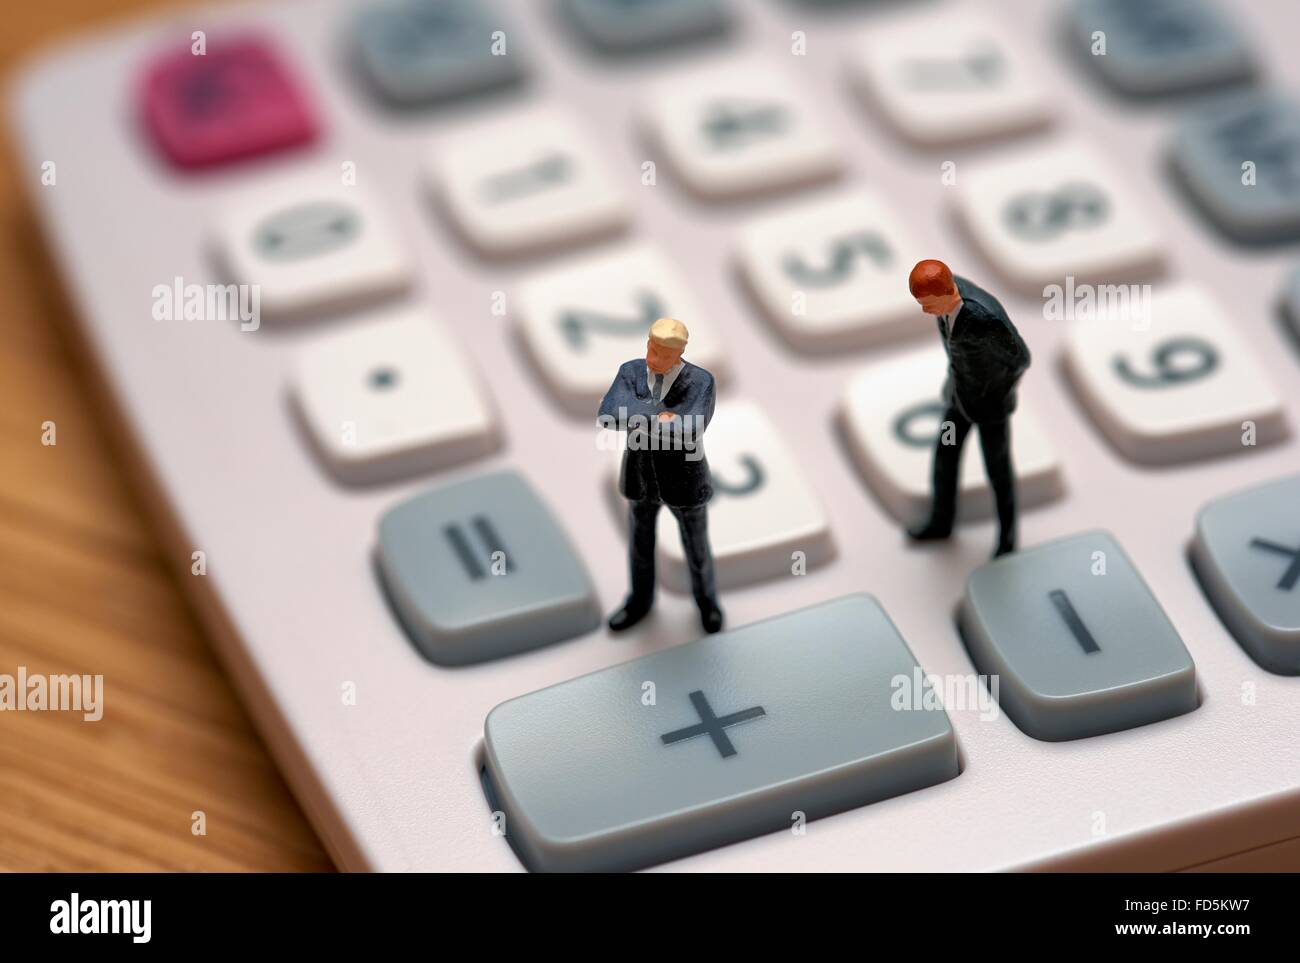 Figurine miniature en costumes hommes debout sur une calculatrice Banque D'Images